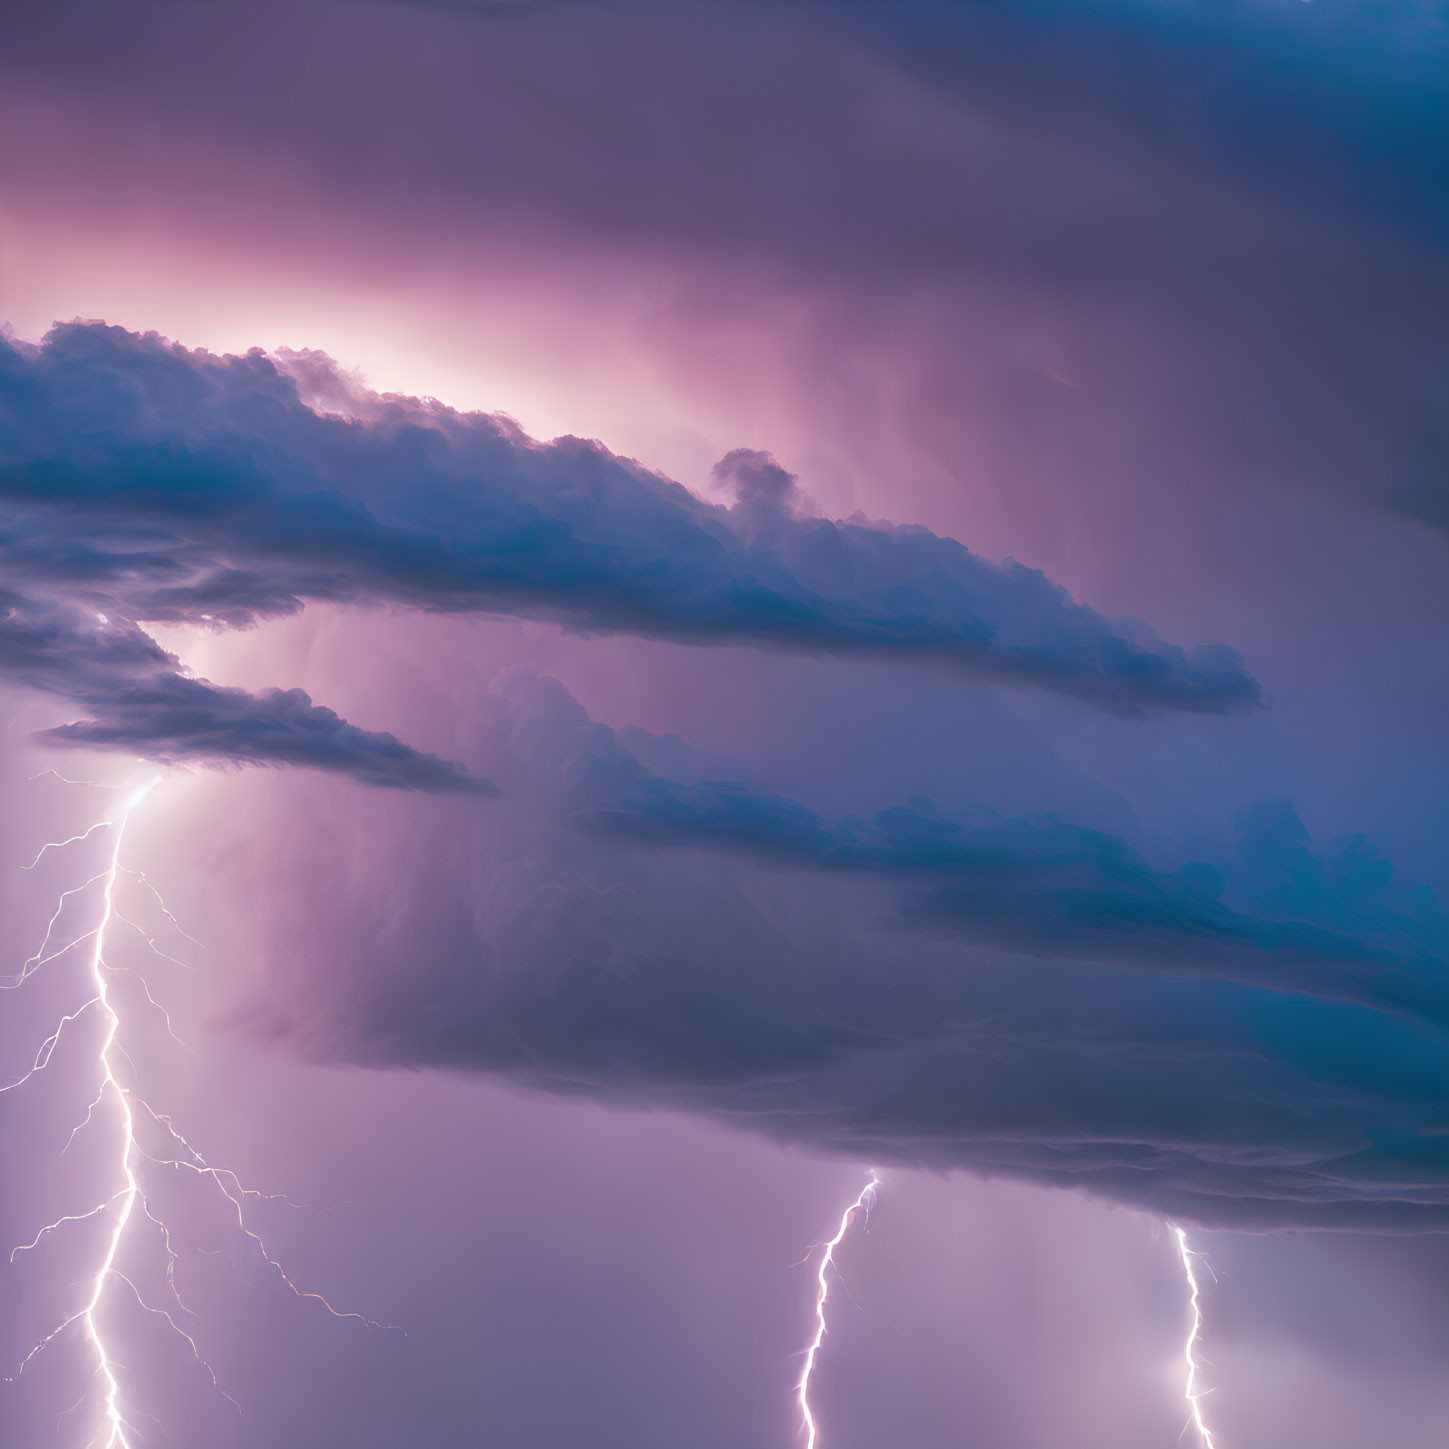 Intense lightning bolts in purple thunderstorm